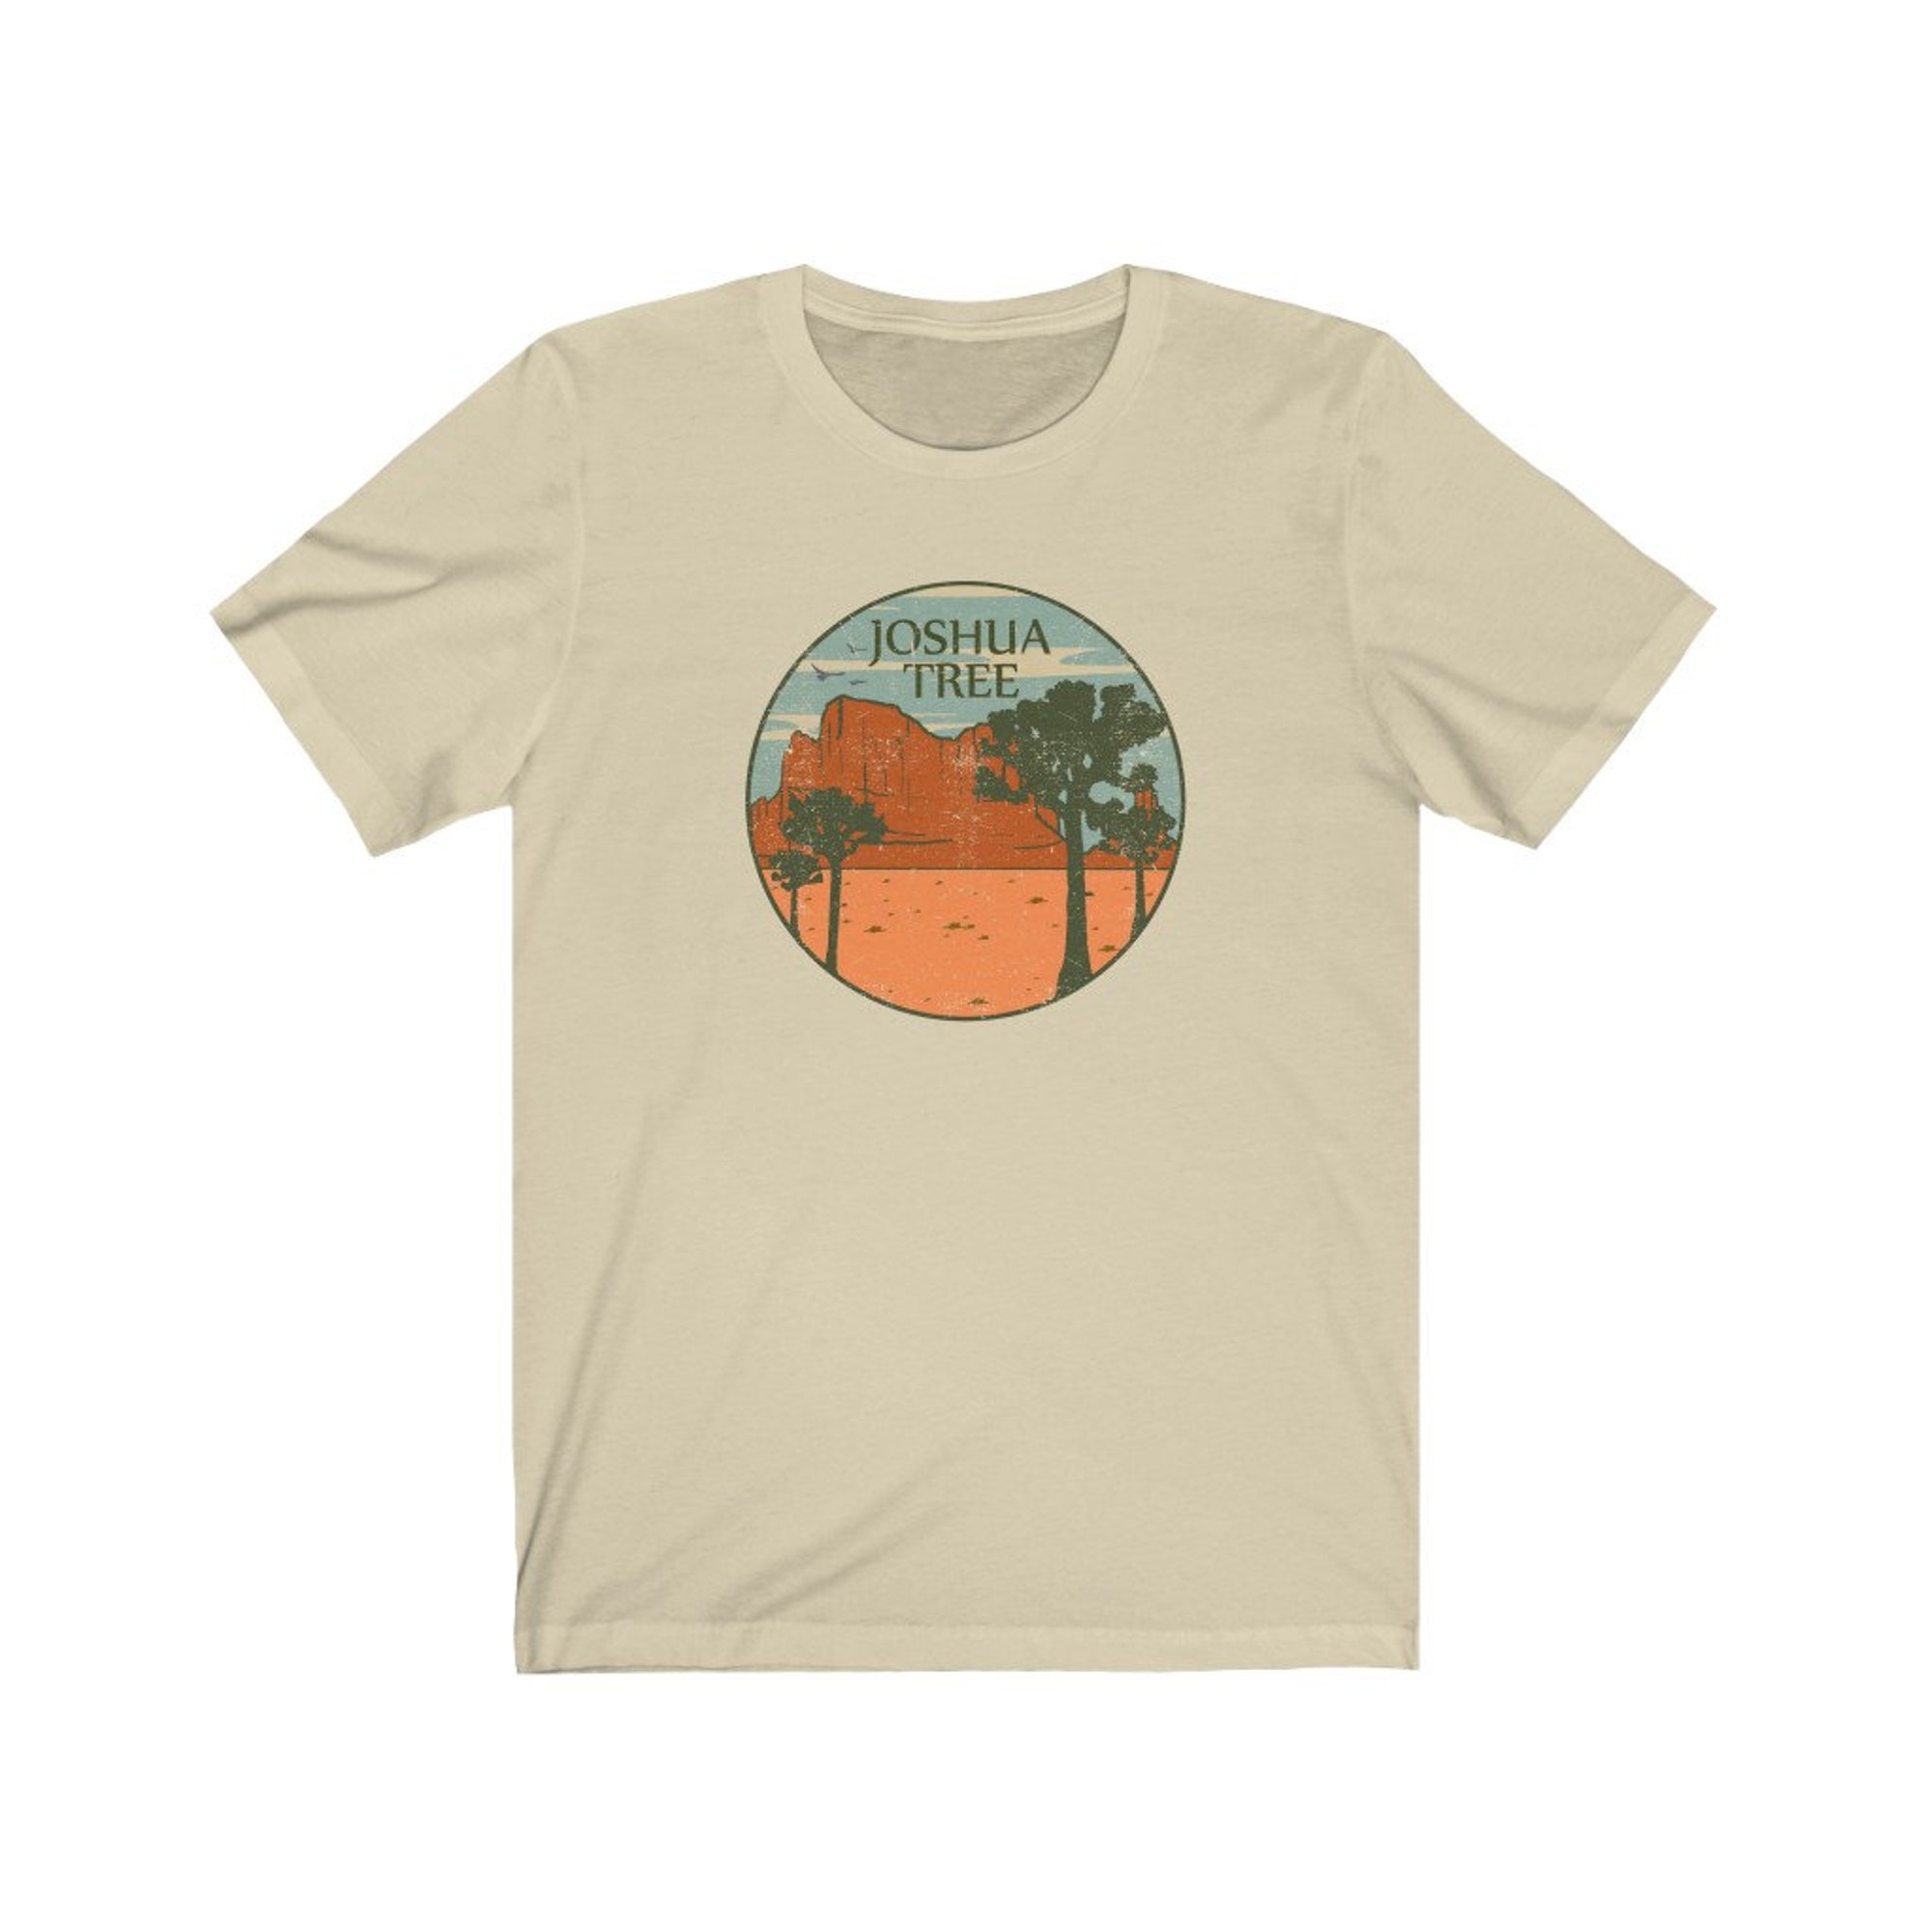 Discover Vintage Style Joshua Tree Tee/Vintage Joshua Tree Shirt/Joshua Tree California Shirt